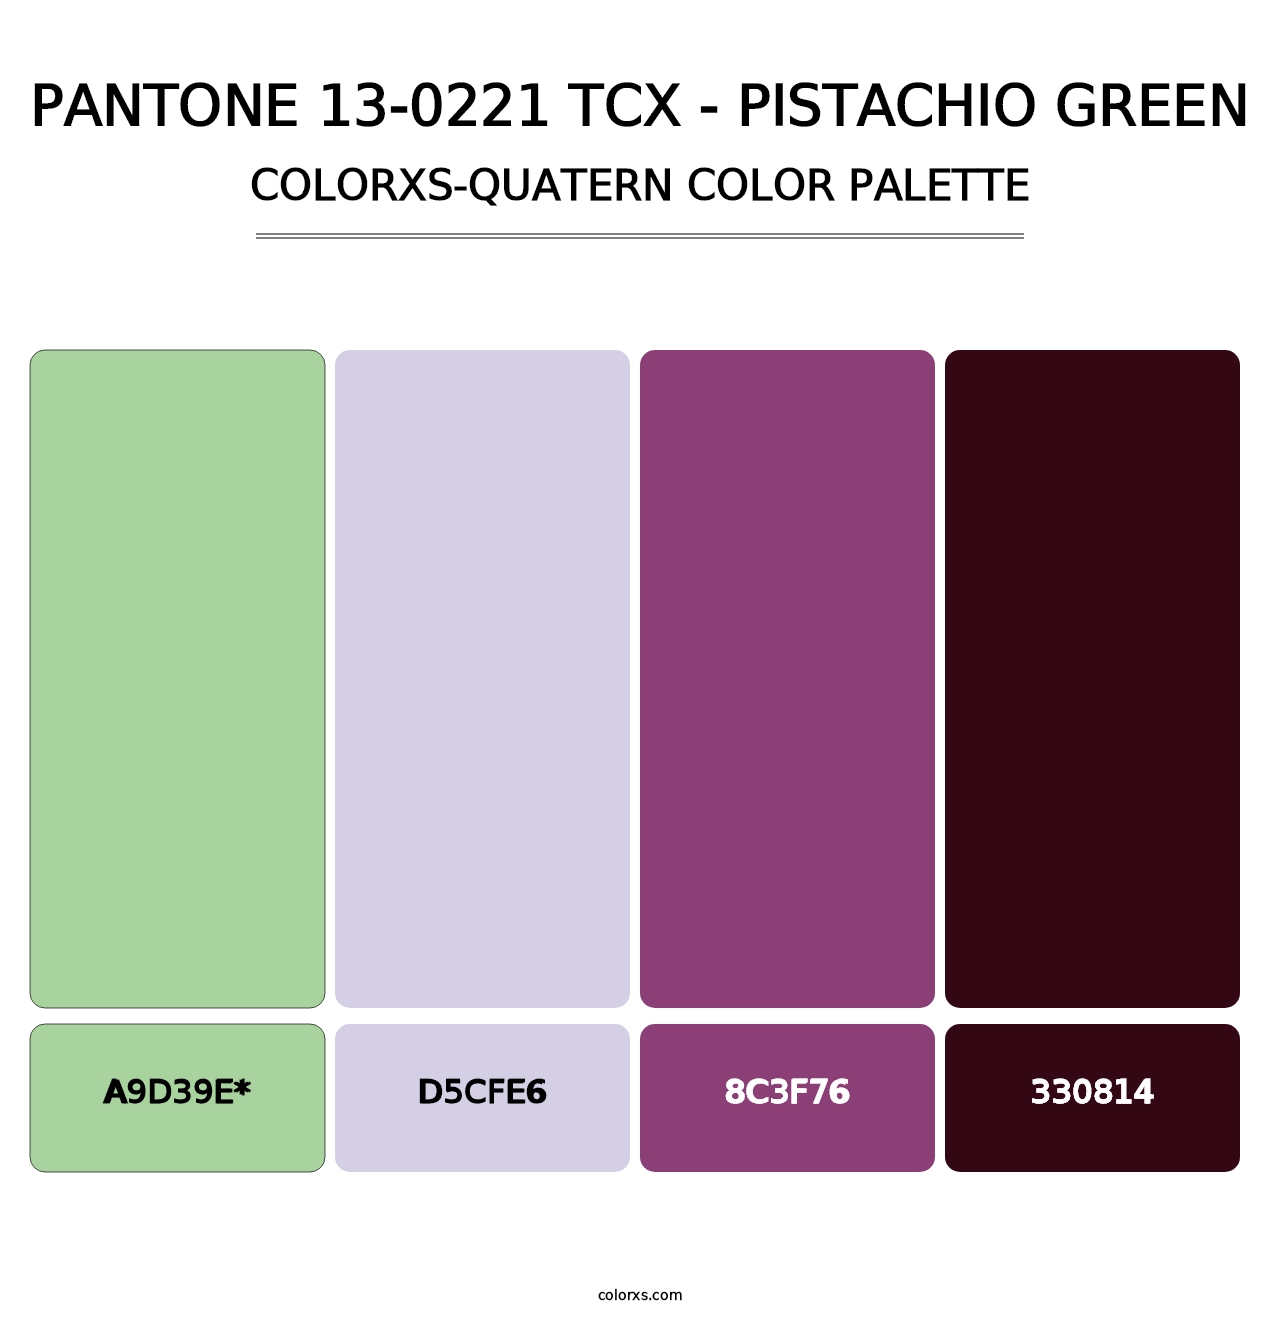 PANTONE 13-0221 TCX - Pistachio Green - Colorxs Quatern Palette